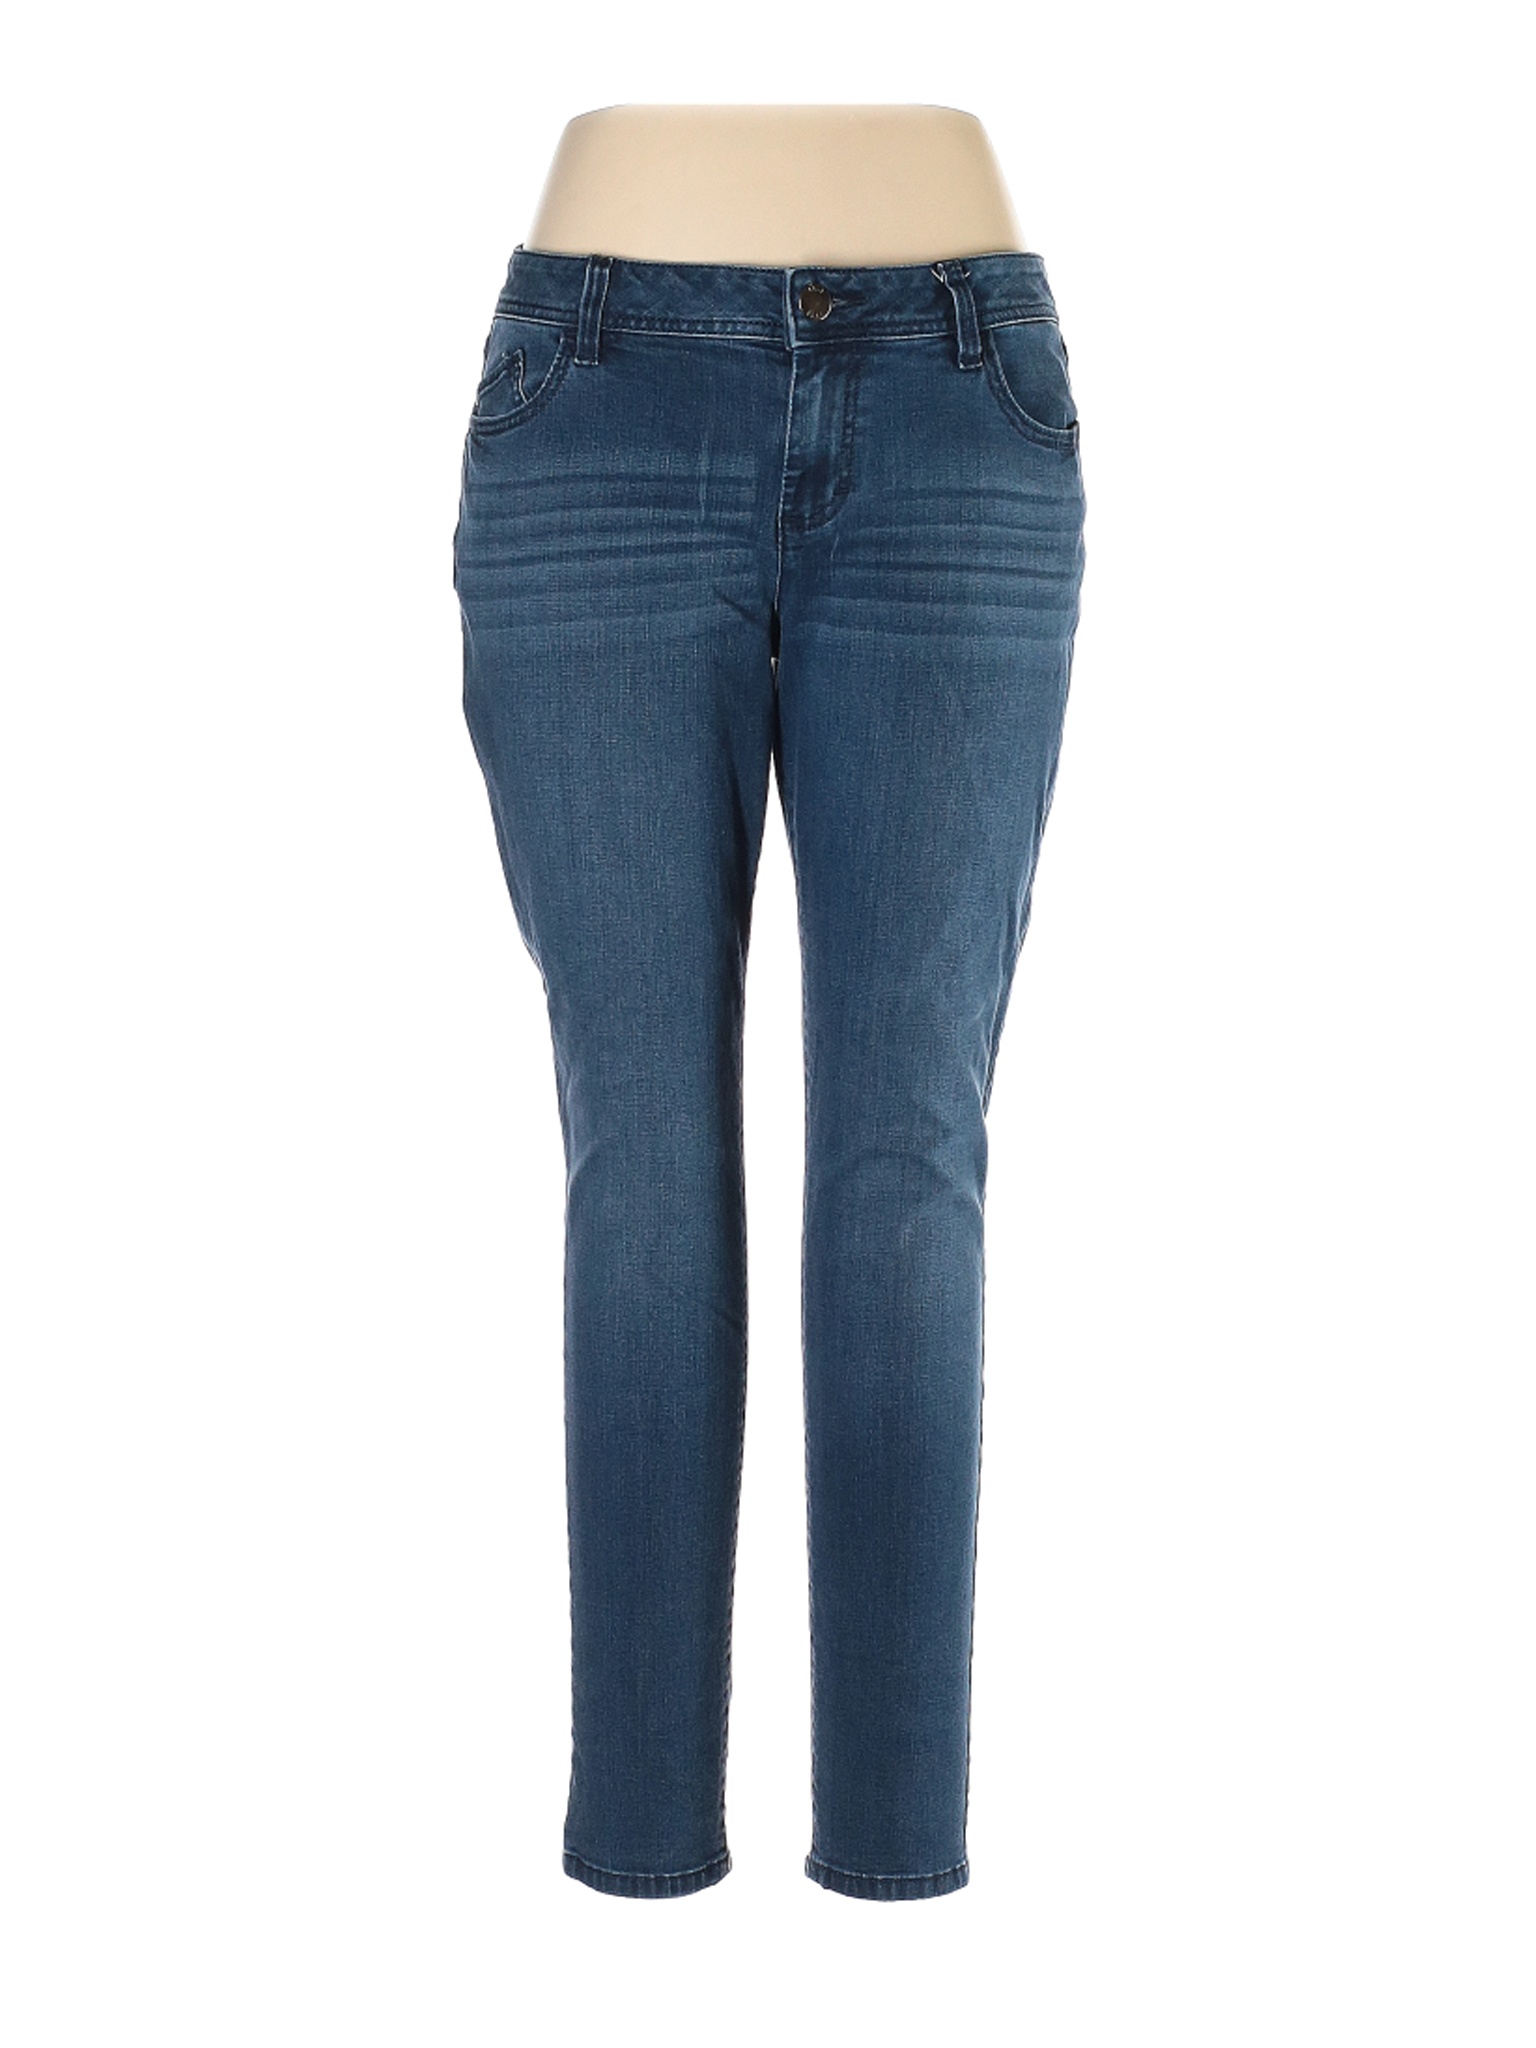 Elle Women Blue Jeans 14 | eBay